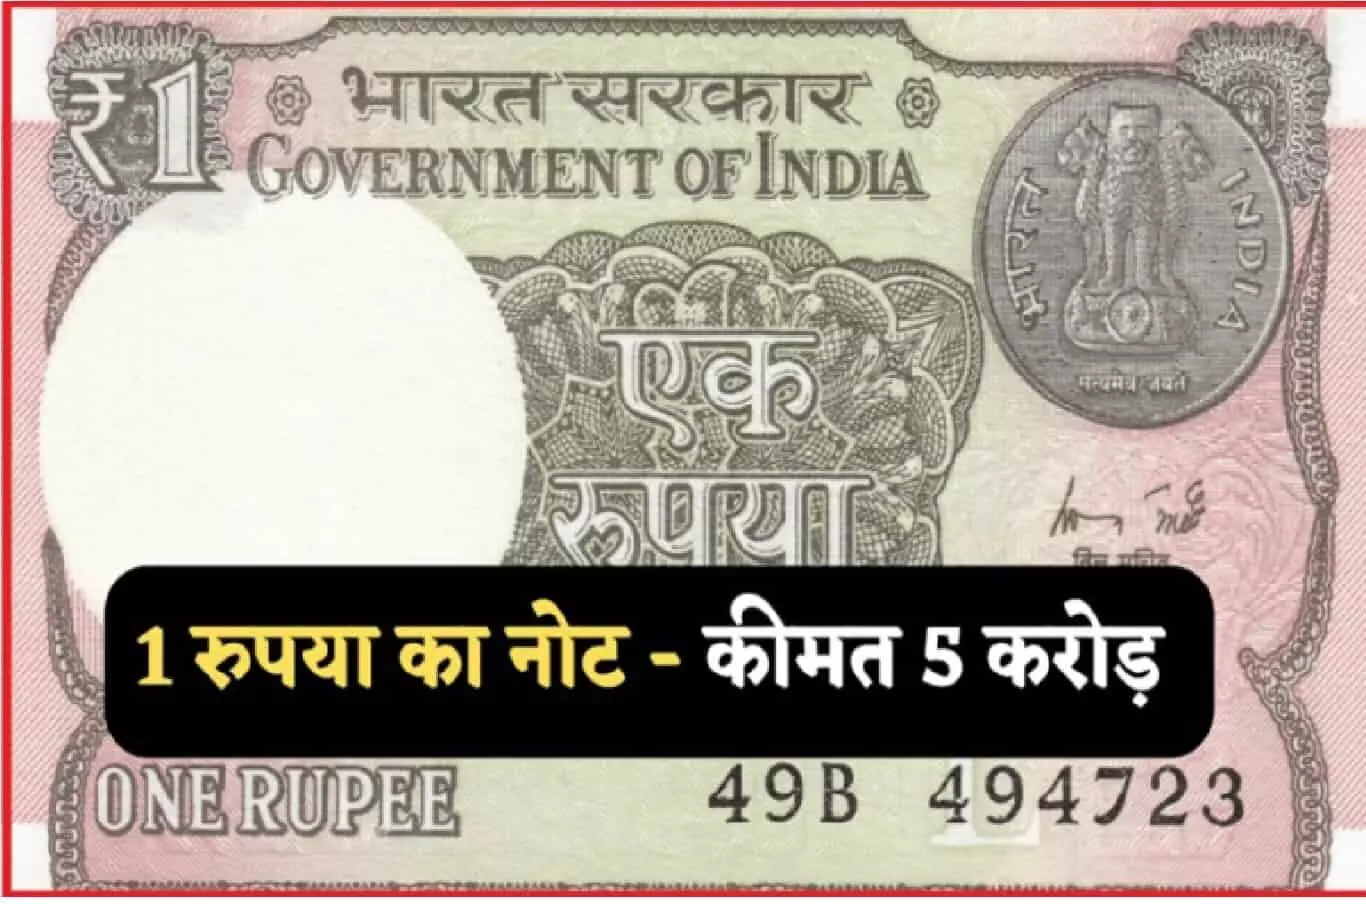 यह पुराना 1 का नोट या सिक्का आपको ₹5,00,00,000 का मालिक बना देगा, जाना पड़ सकता है CA के पास